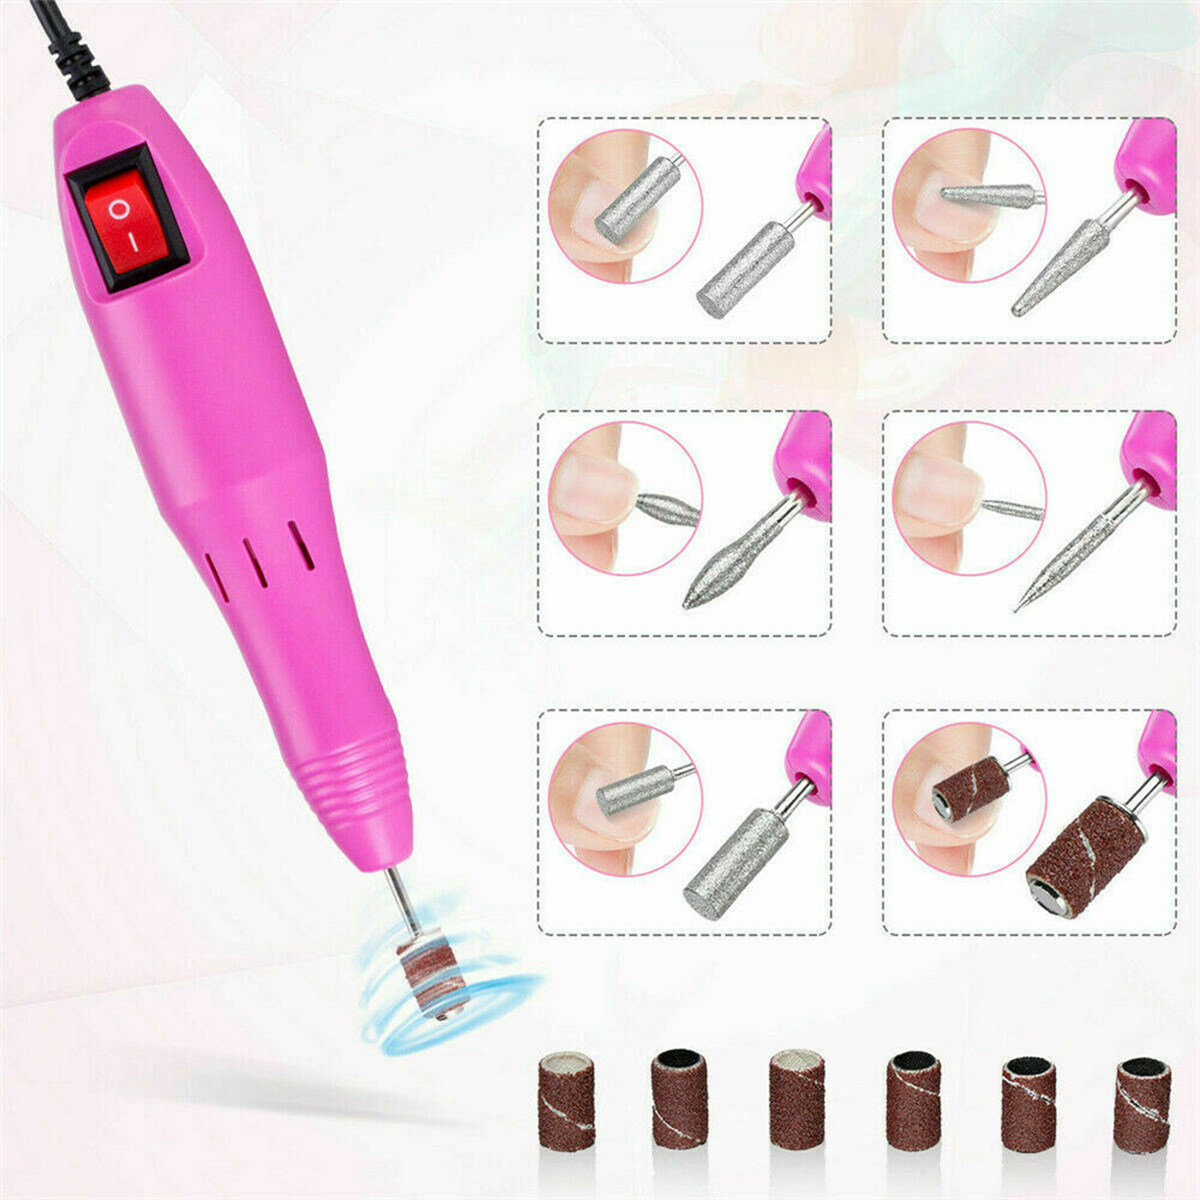 110220V-Electric-Nail-Drill-Pen-Set-Nail-File-Art-Manicure-Pedicure-Polish-Tools-1762898-5